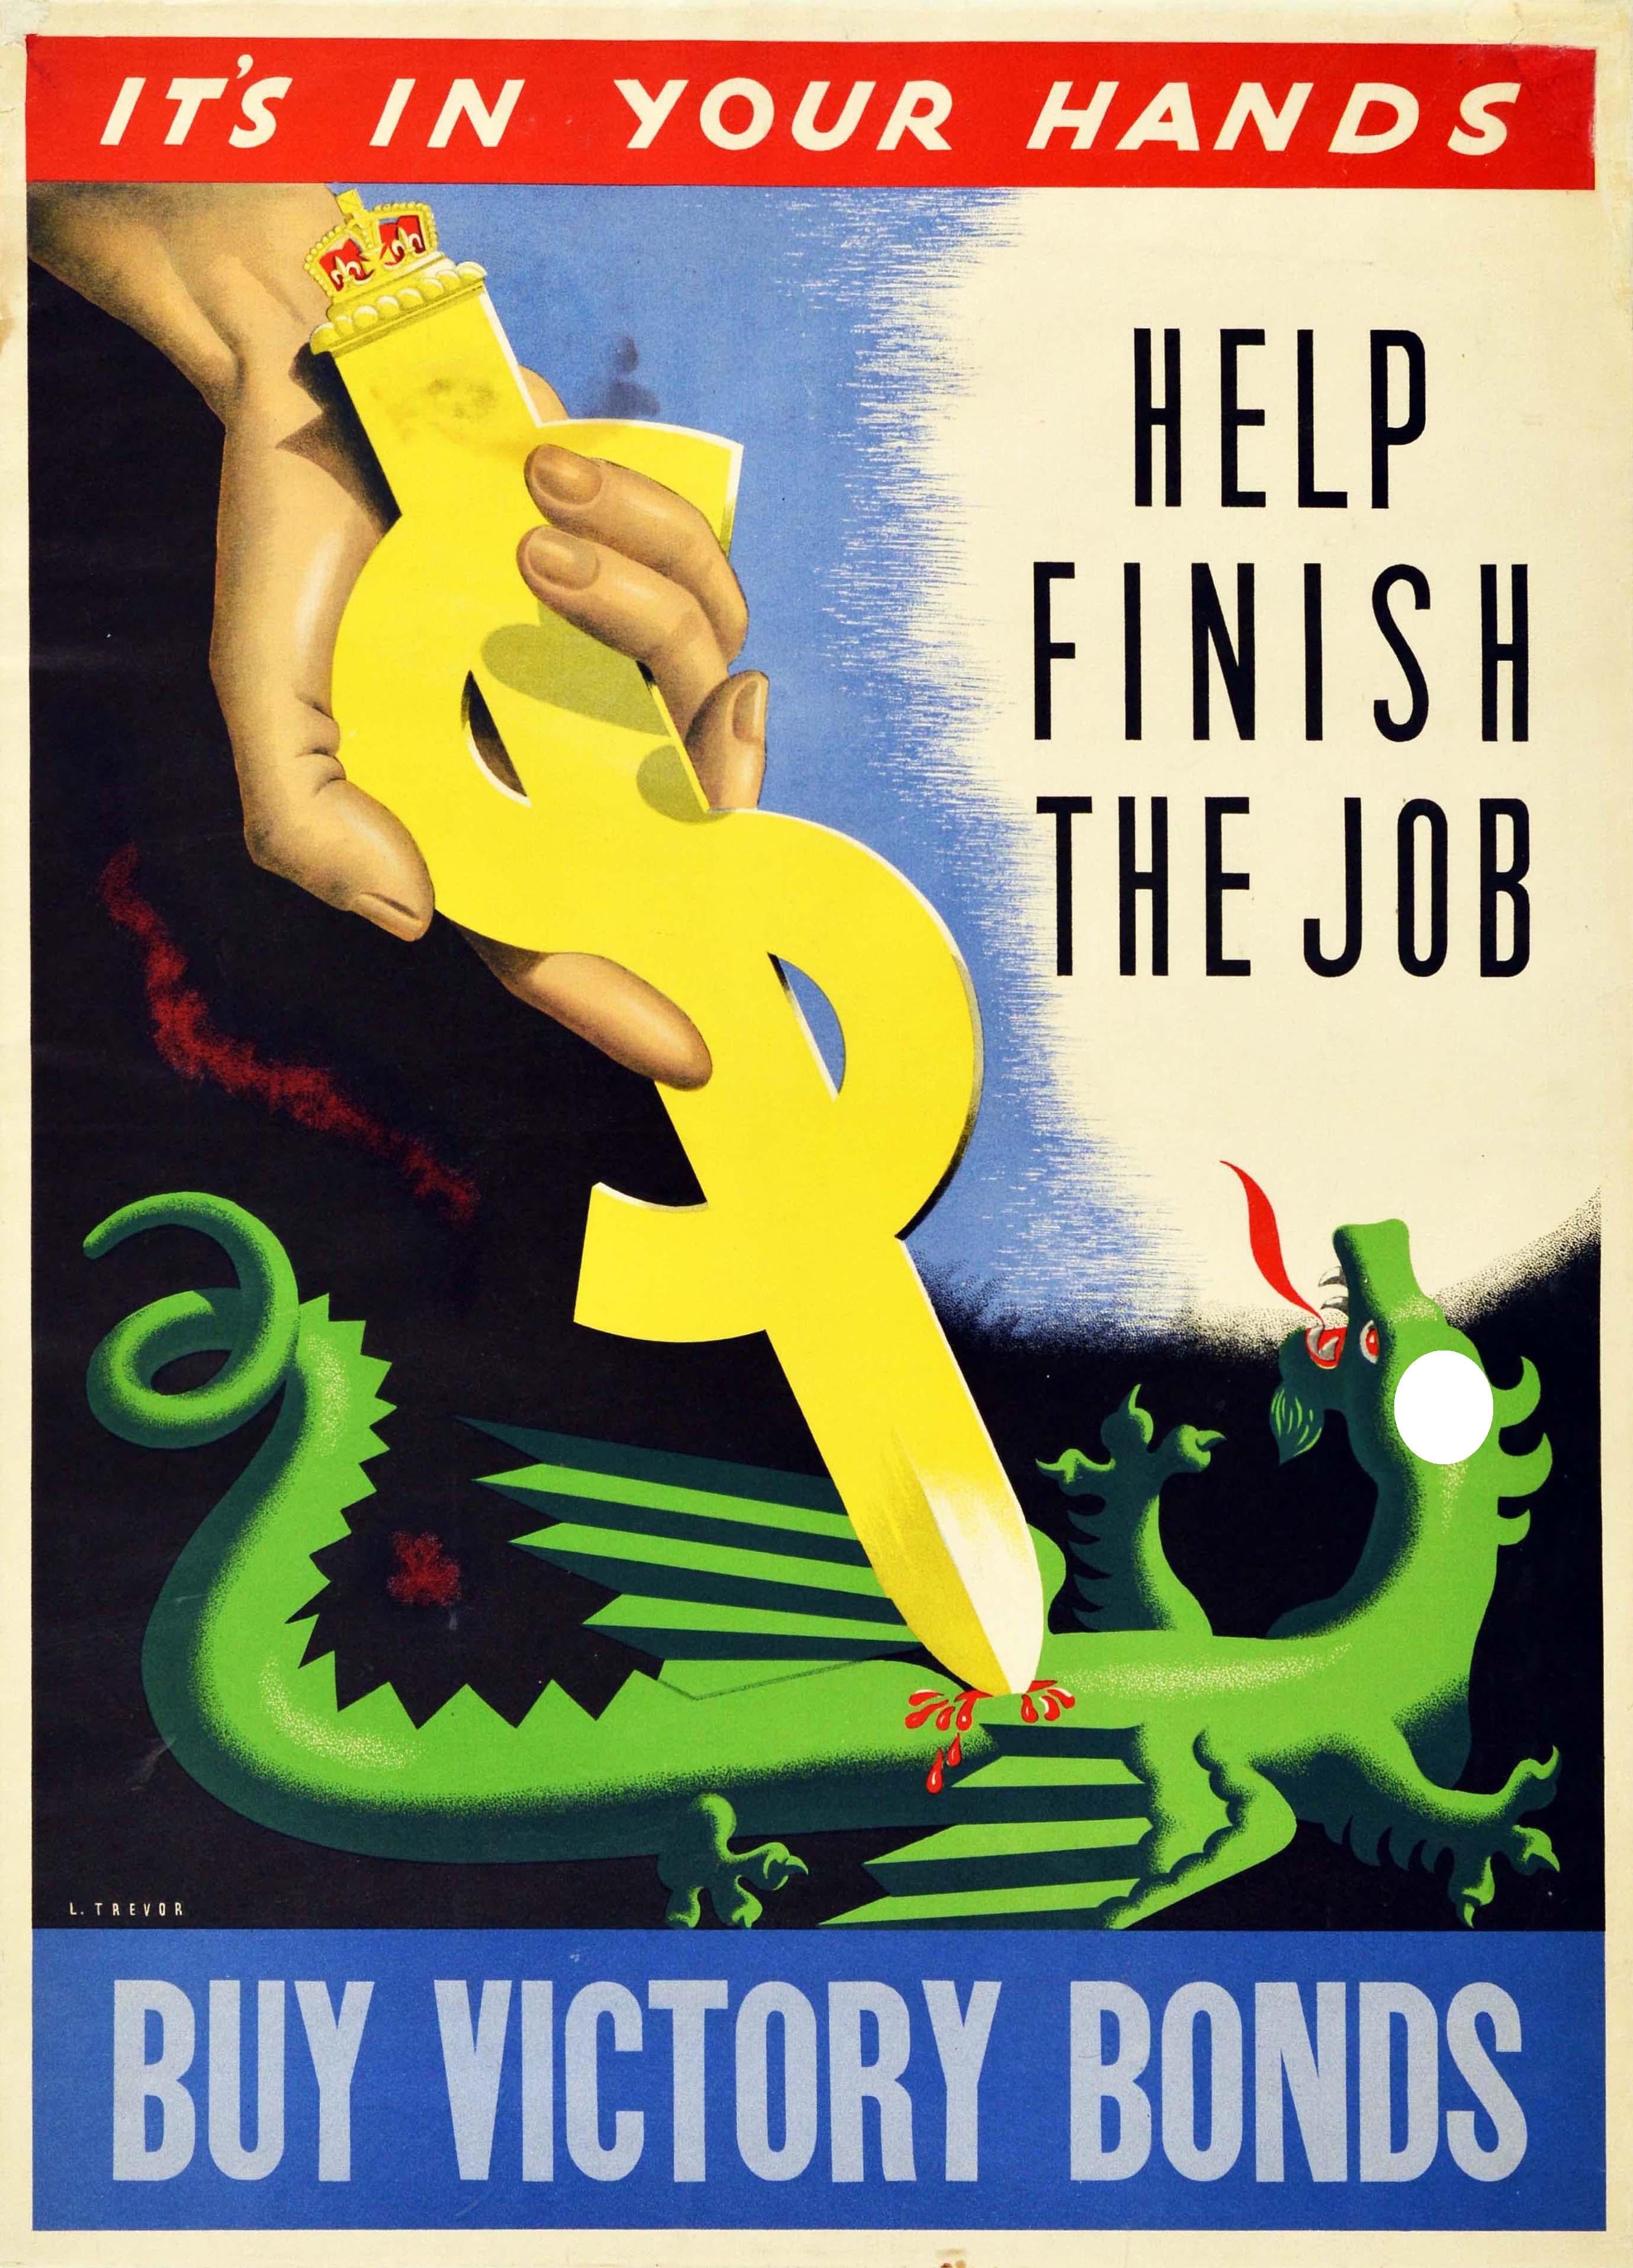 L. Trevor Print - Original Vintage Canadian WWII Poster Help Finish The Job Buy Victory Bonds